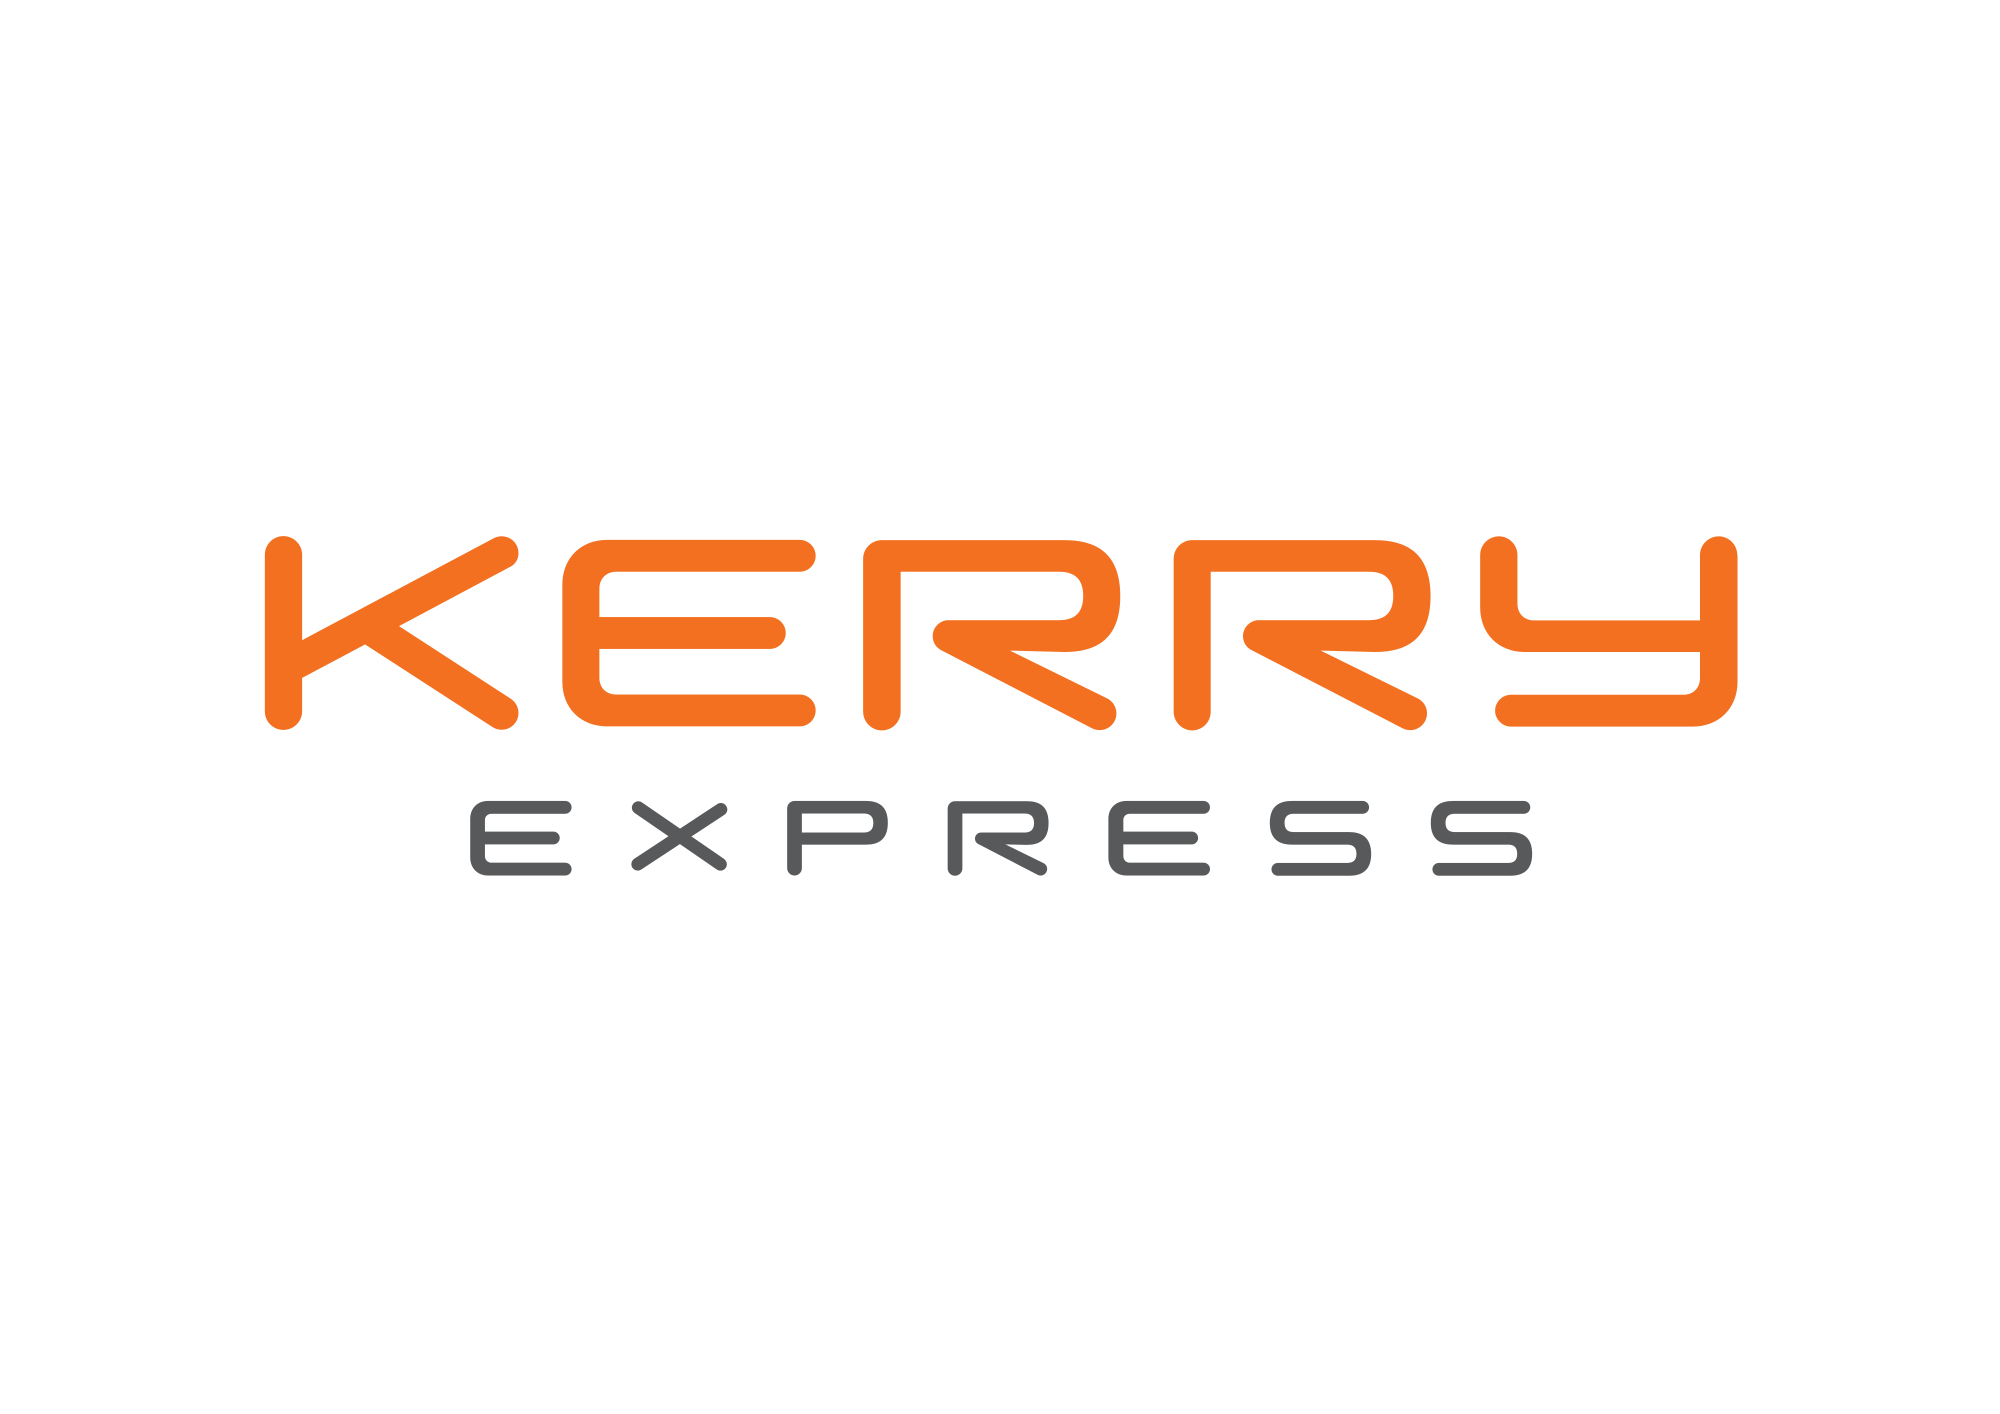 ขนส่ง Kerry express